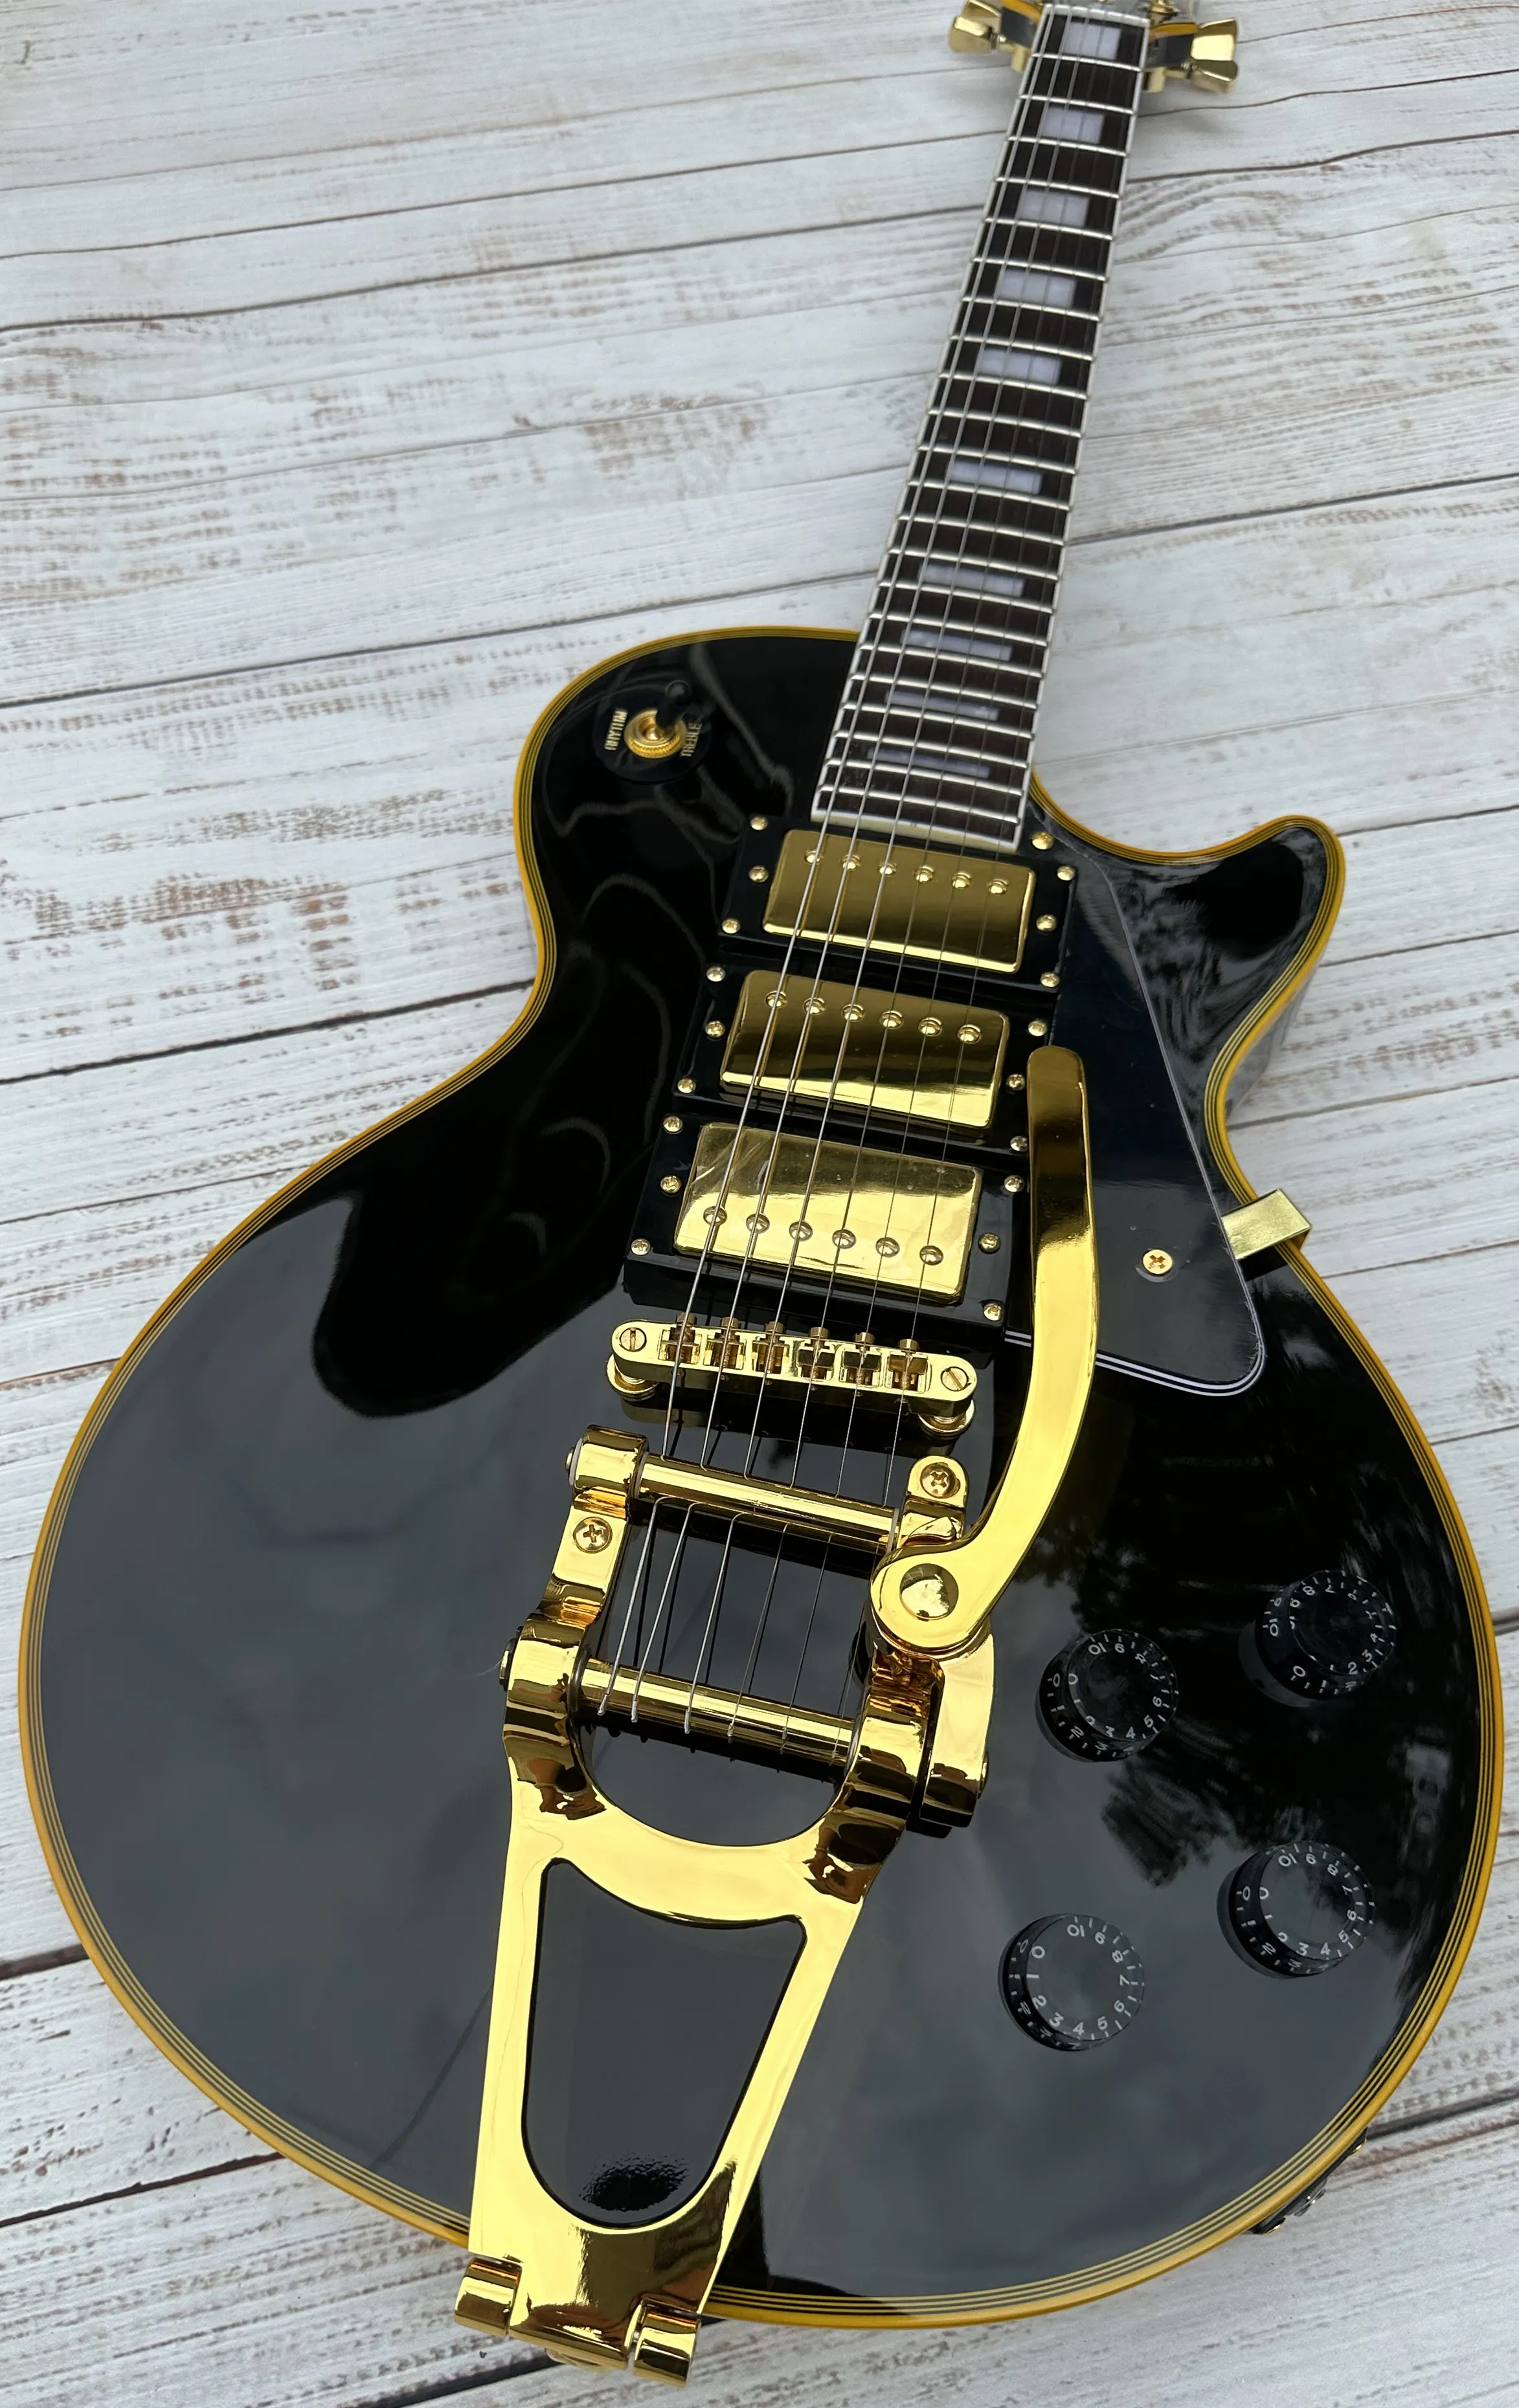 Anpassad elektrisk gitarr, gul logotyp och kroppsbindning, guldvibrato, guldtillbehör, snabb frakt